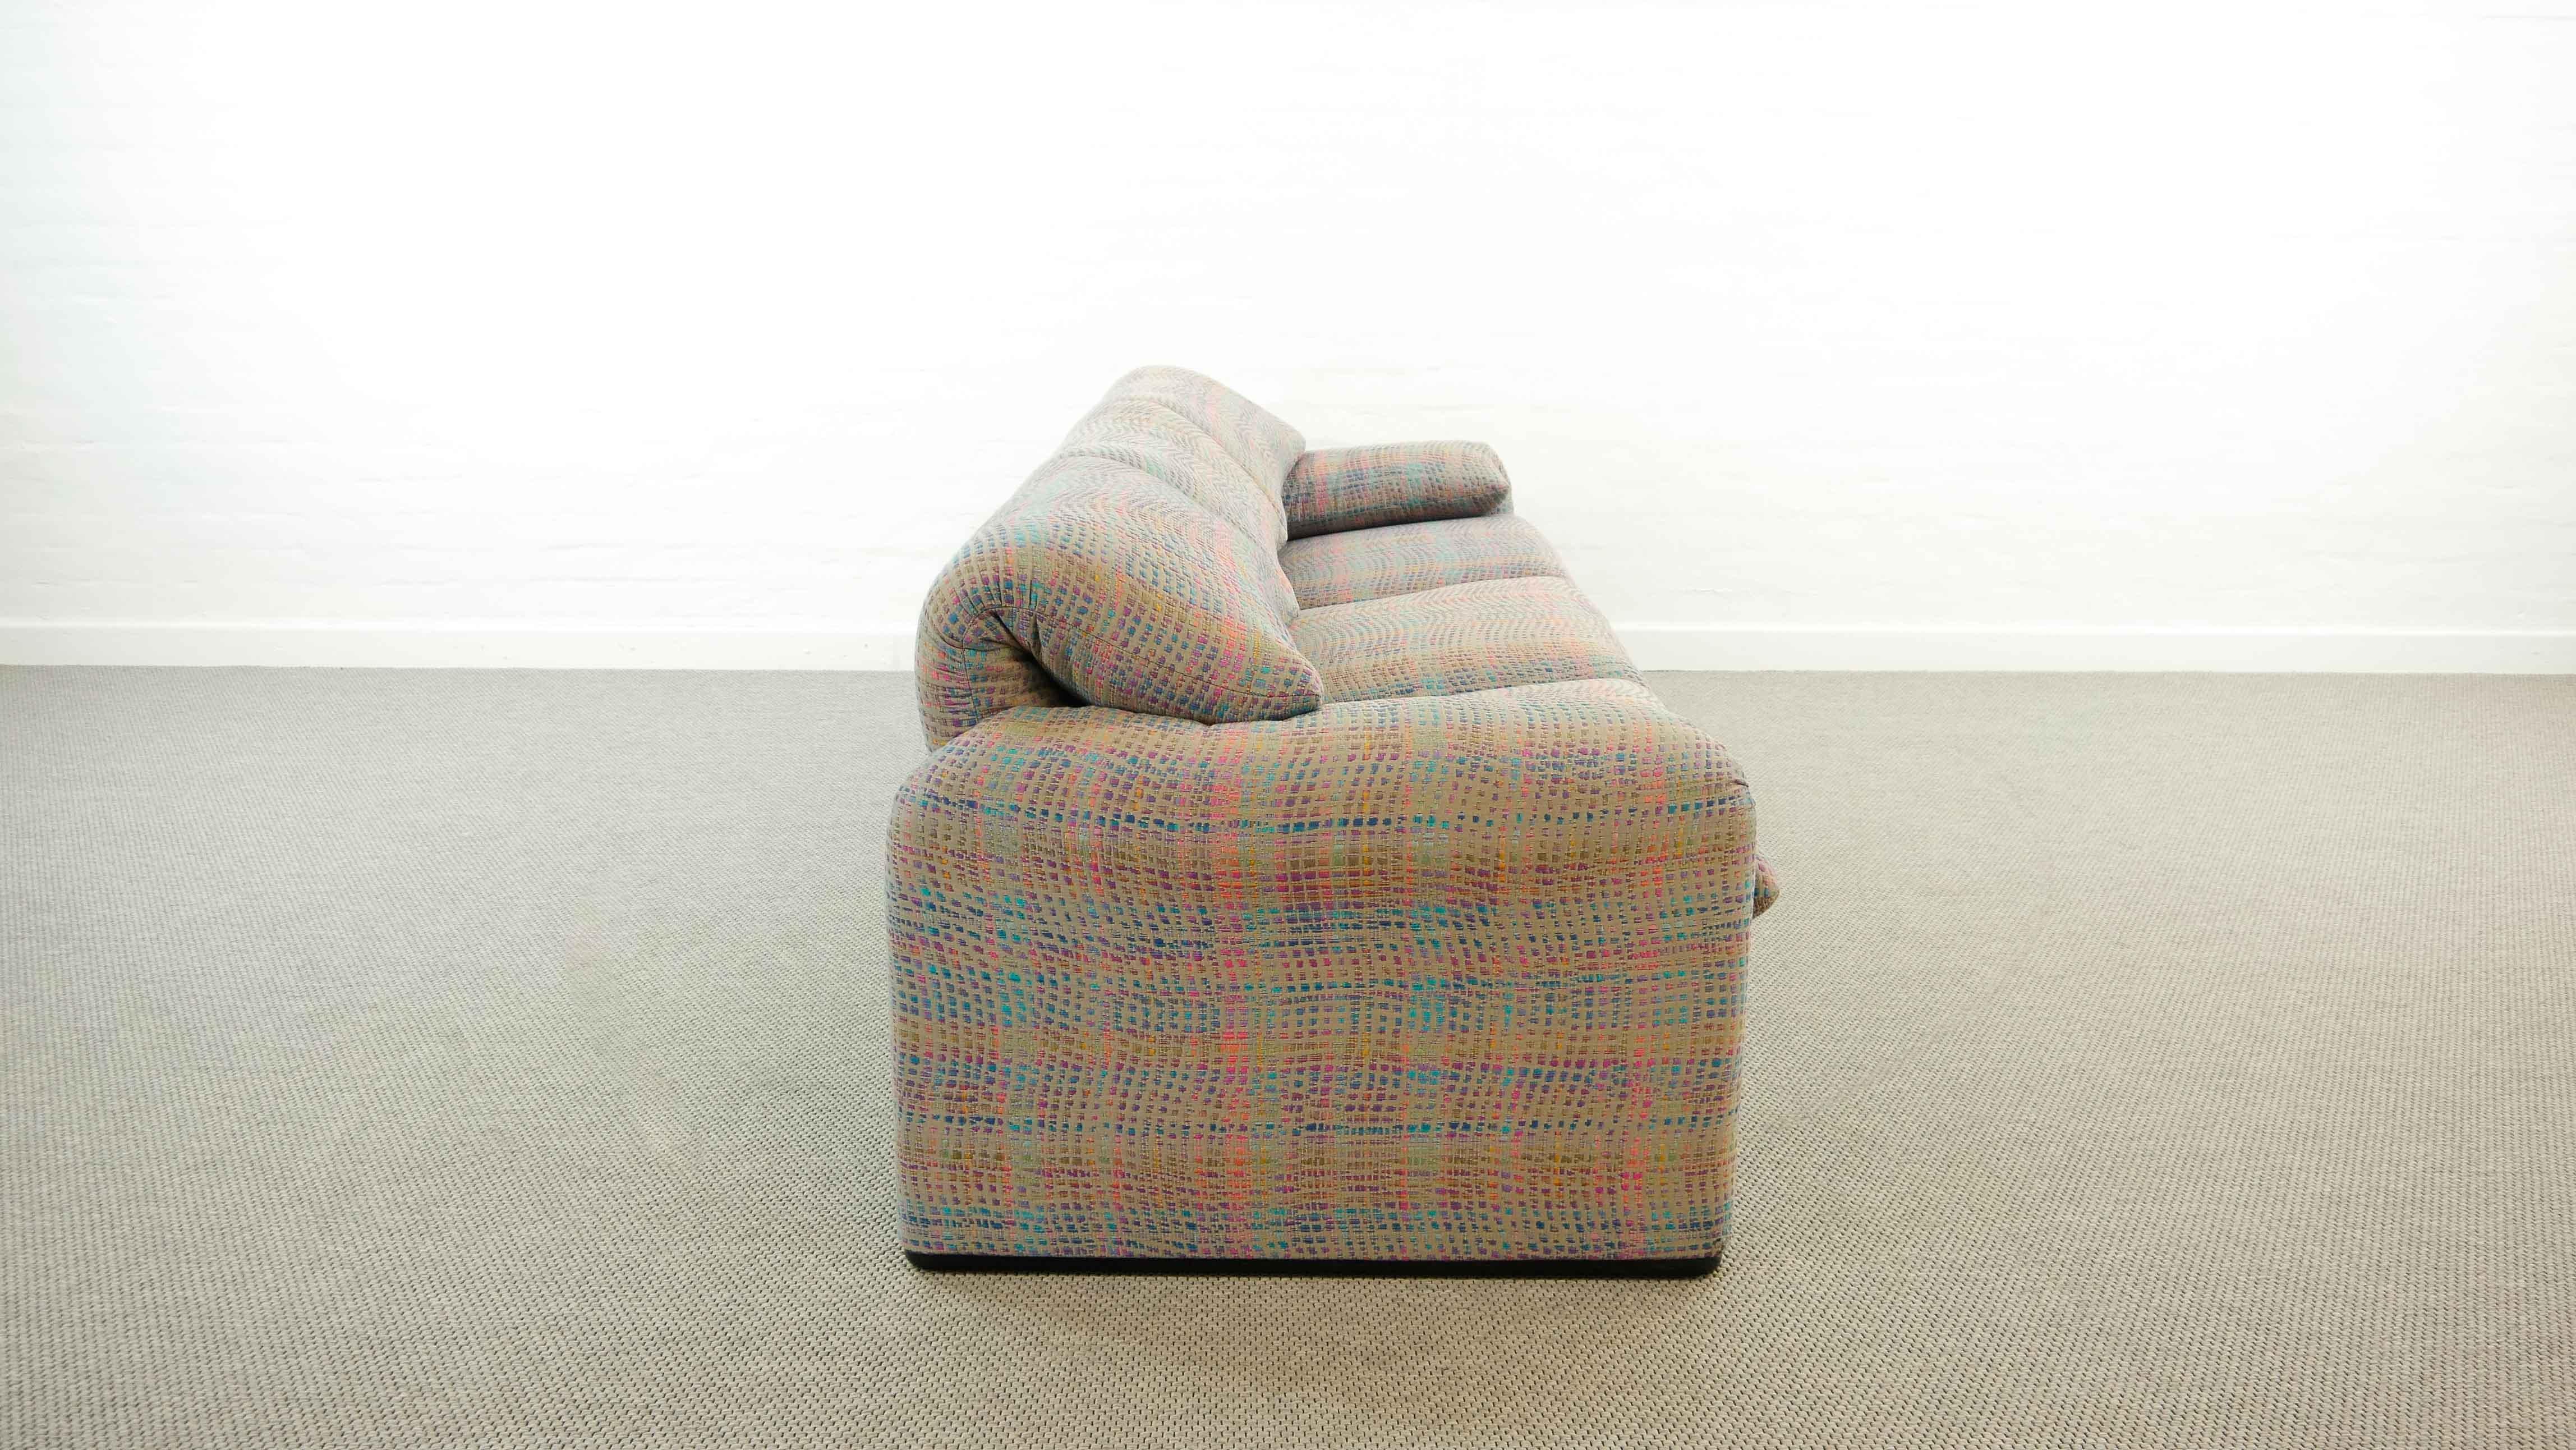 Maralunga 3-Seat Sofa by Vico Magistretti for Cassina in Grey-Multicolore Fabric 1